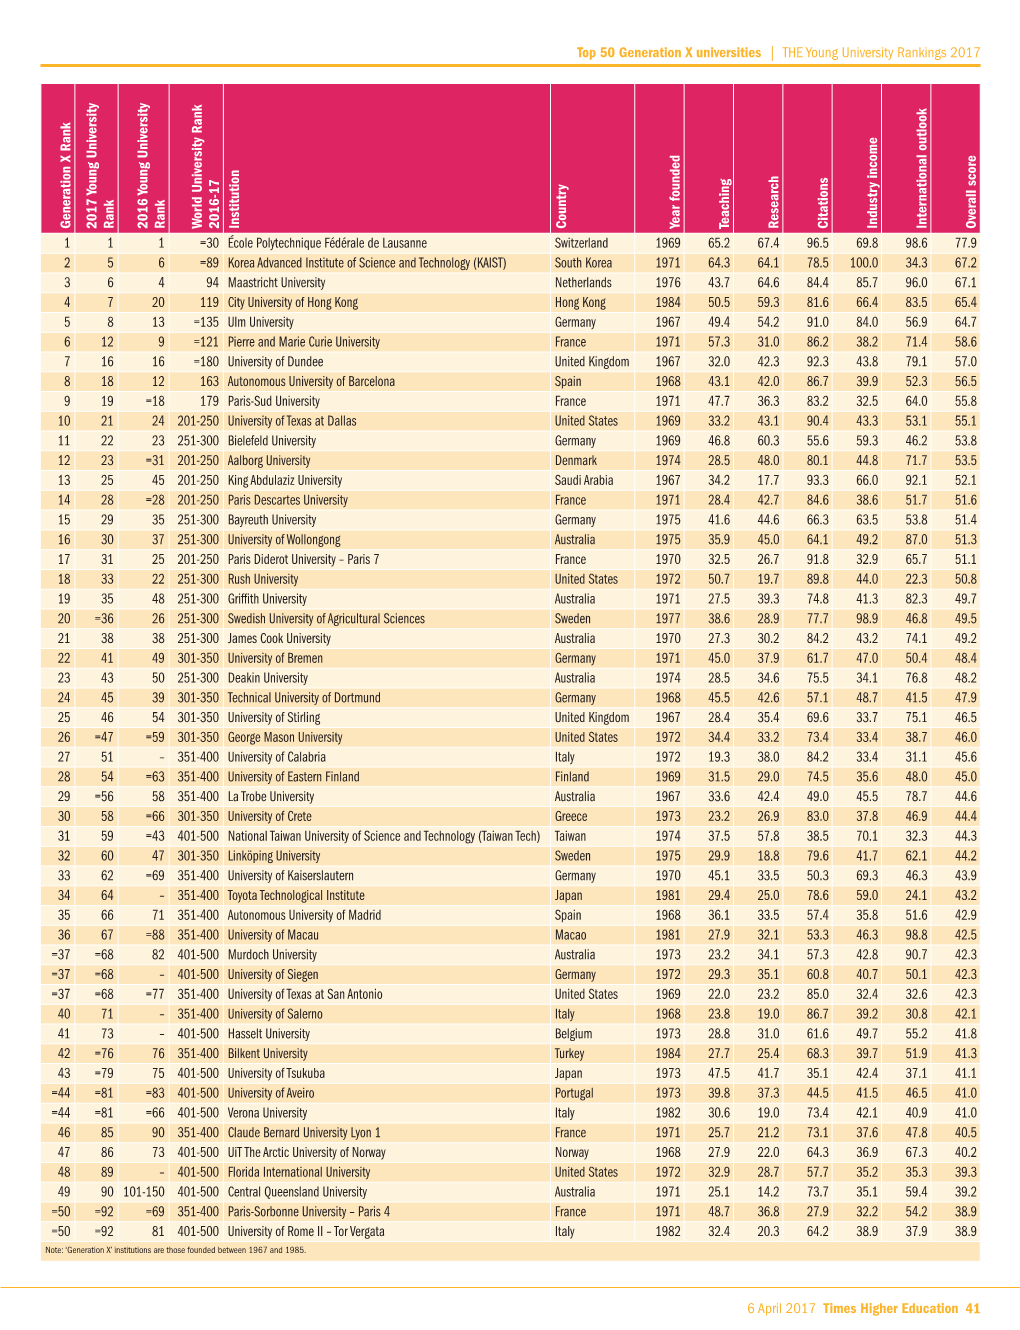 Top 50 Generation X Universities